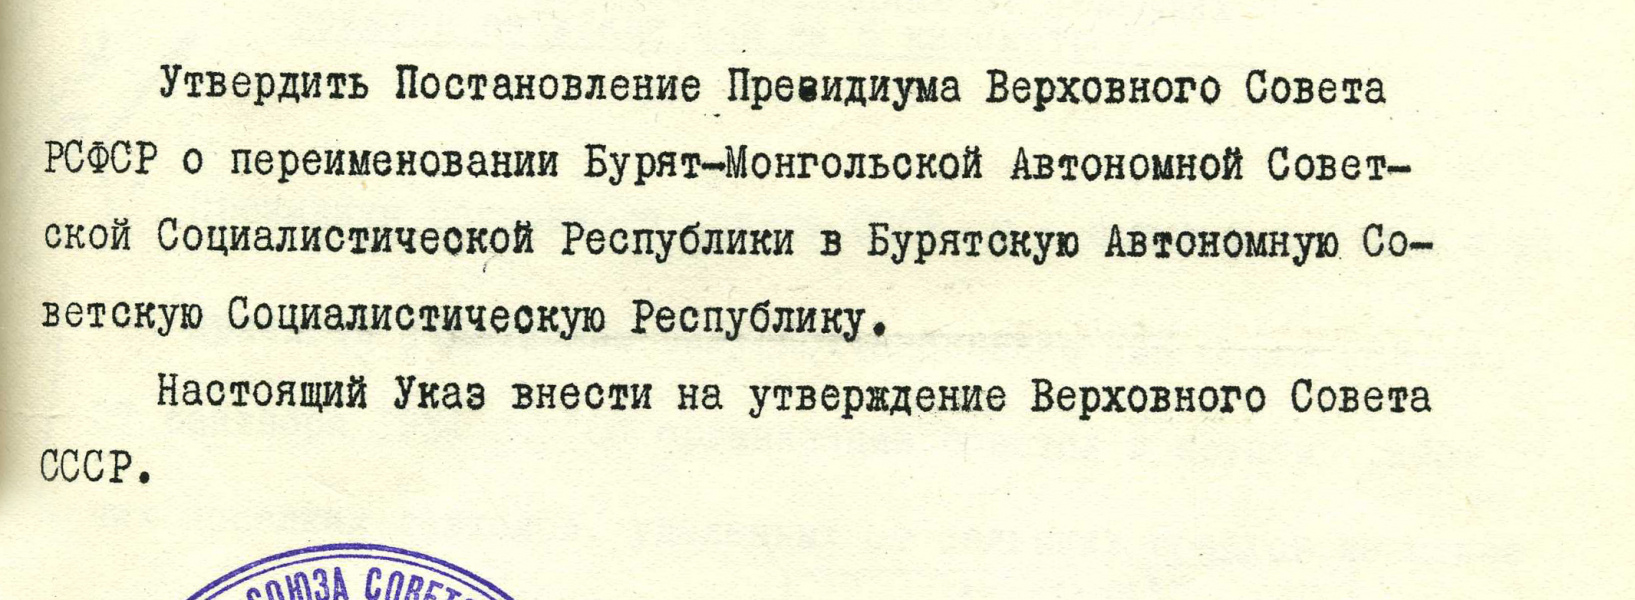  7 июля 1958 г. 65 лет со дня переименования Бурят-Монгольской АССР в Бурятскую АССР